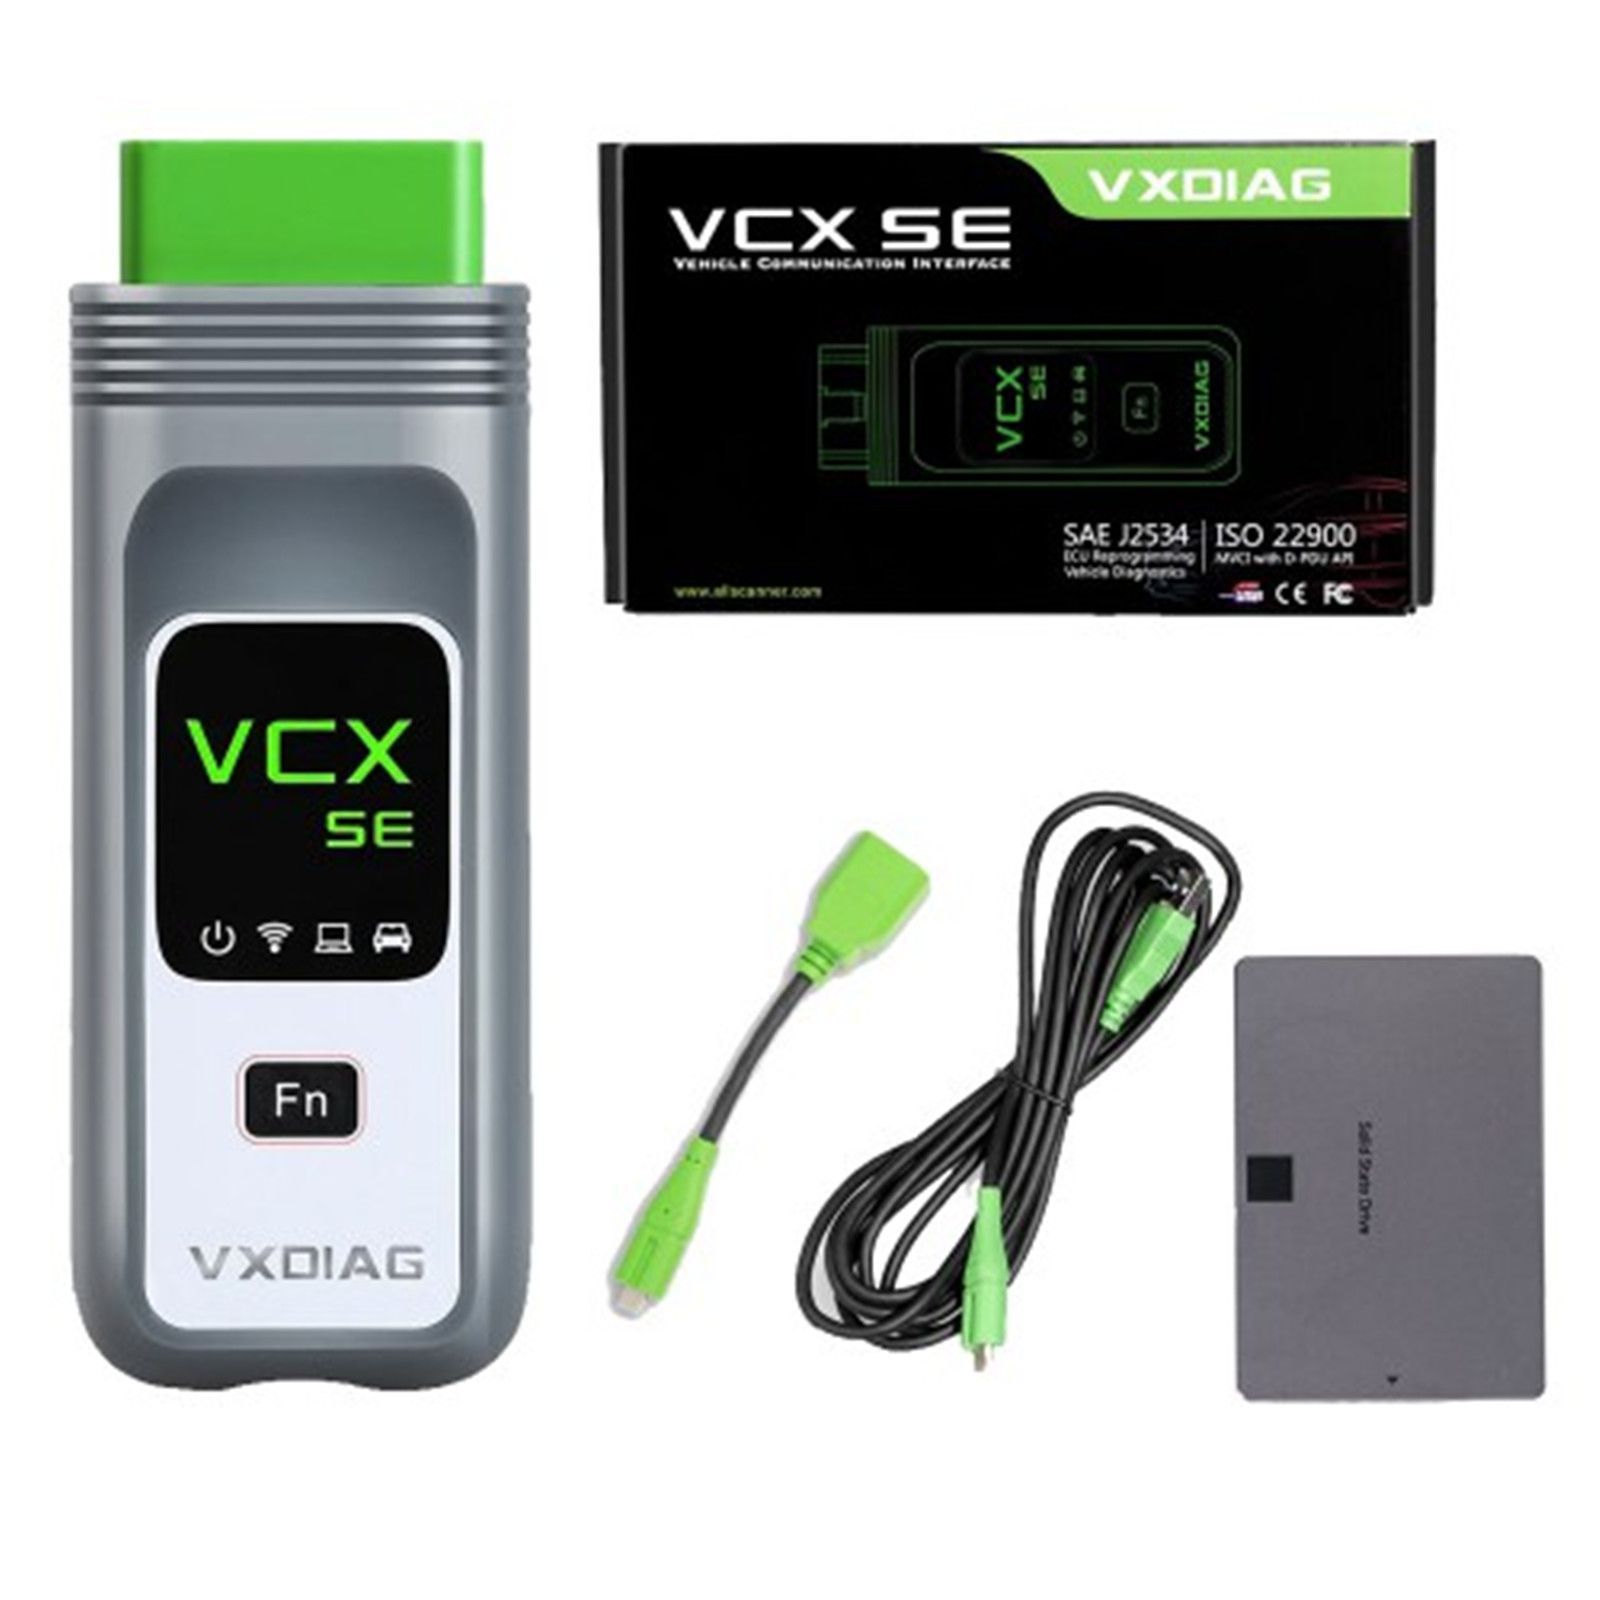 VXDIAG VCX SE DOIP Vollmarken mit 2TB Software SSD für JLR HONDA GM VW FORD MAZDA TOYOTA Subaru VOLVO BMW BENZ